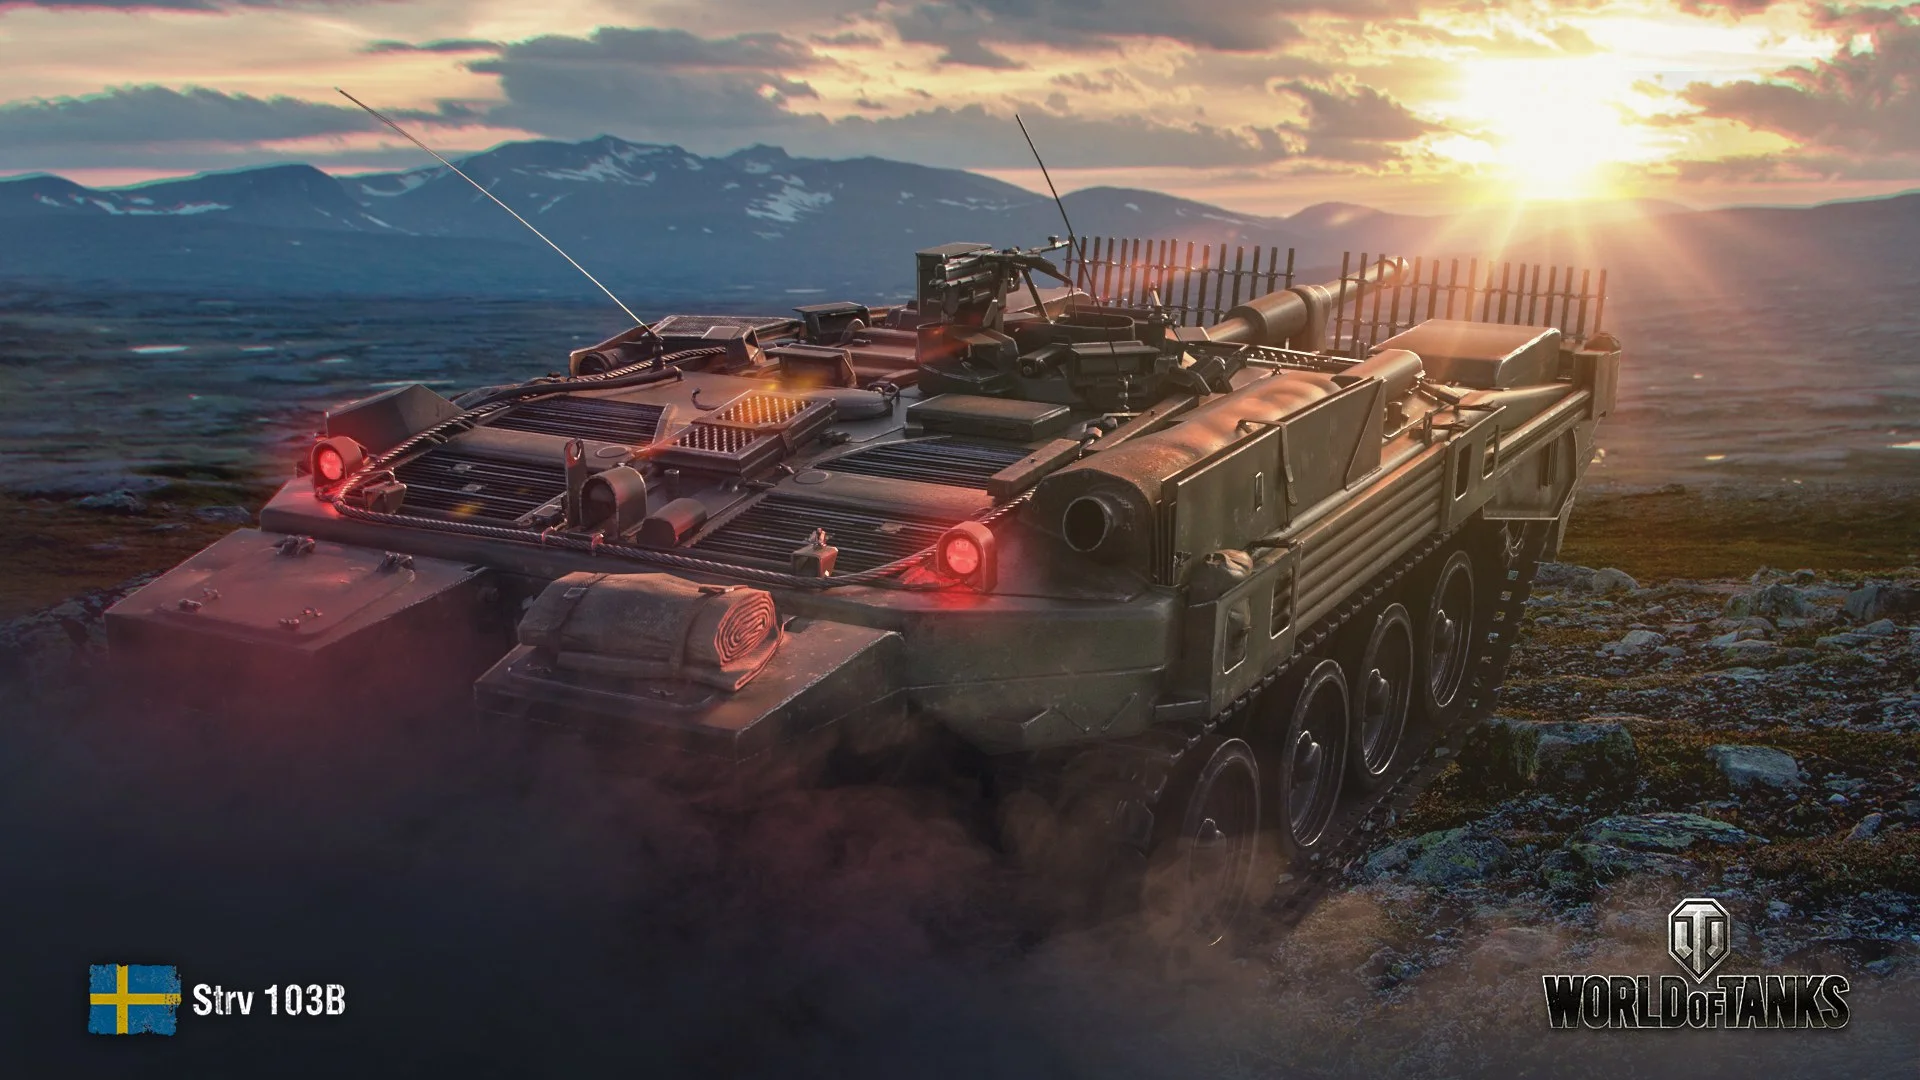 Гайд по World of Tanks 1.0. 5 лучших прокачиваемых ПТ-САУ 10 уровня - фото 5